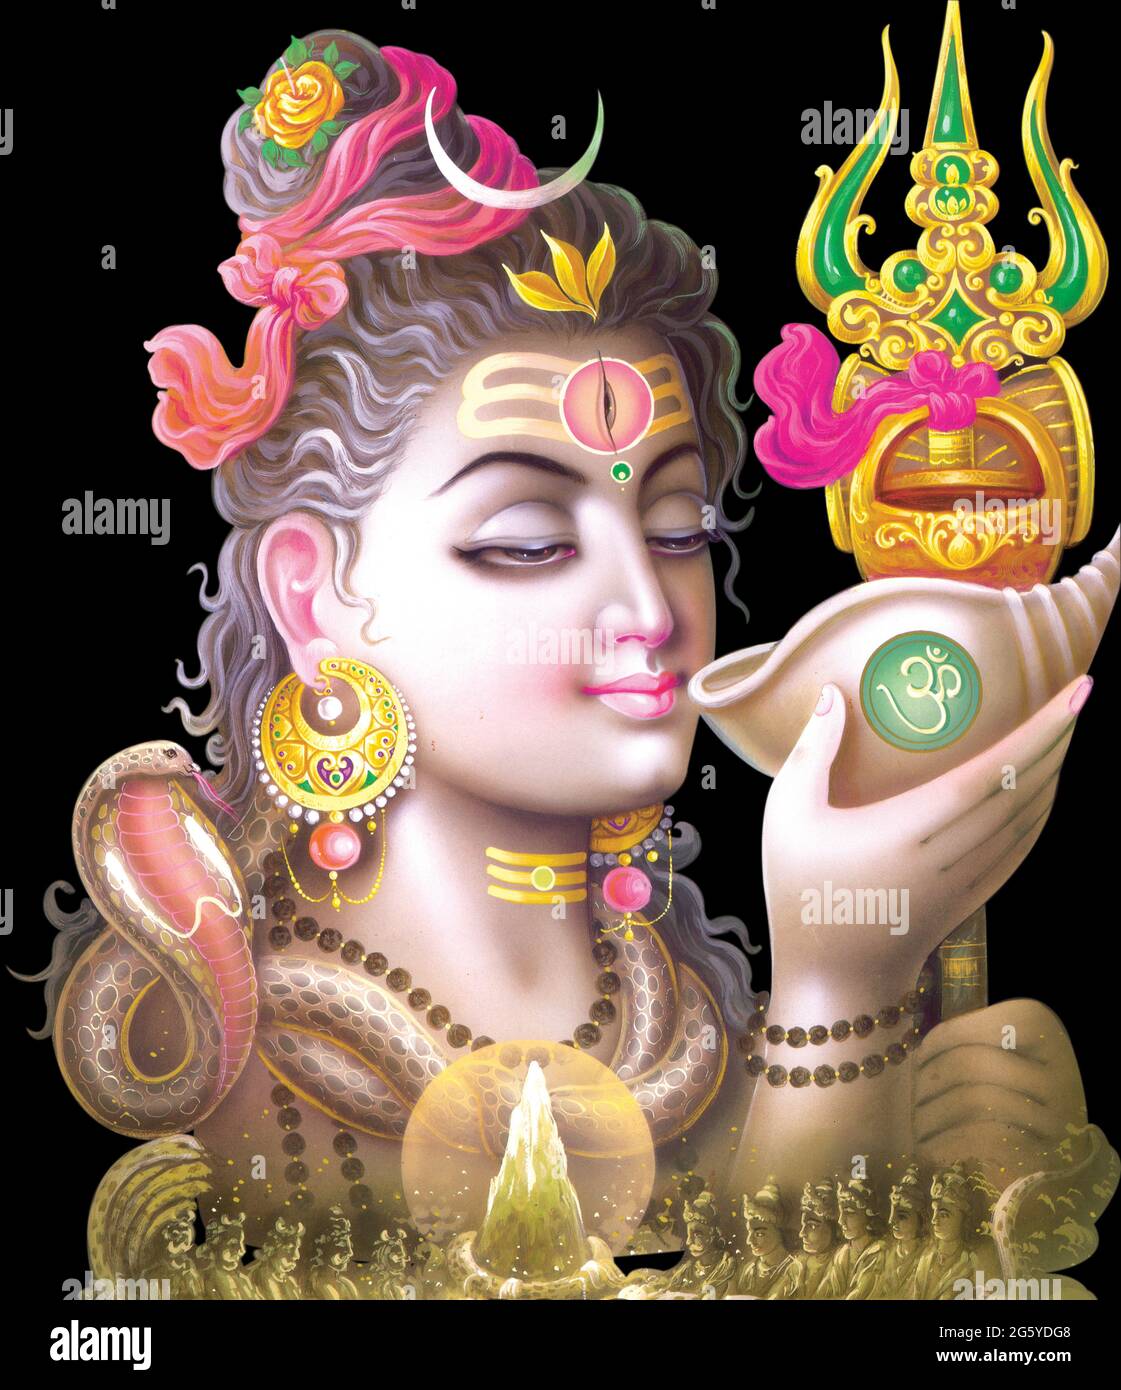 Shiva HD wallpaper | Shiva wallpaper, Photos of lord shiva, Lord shiva hd  wallpaper